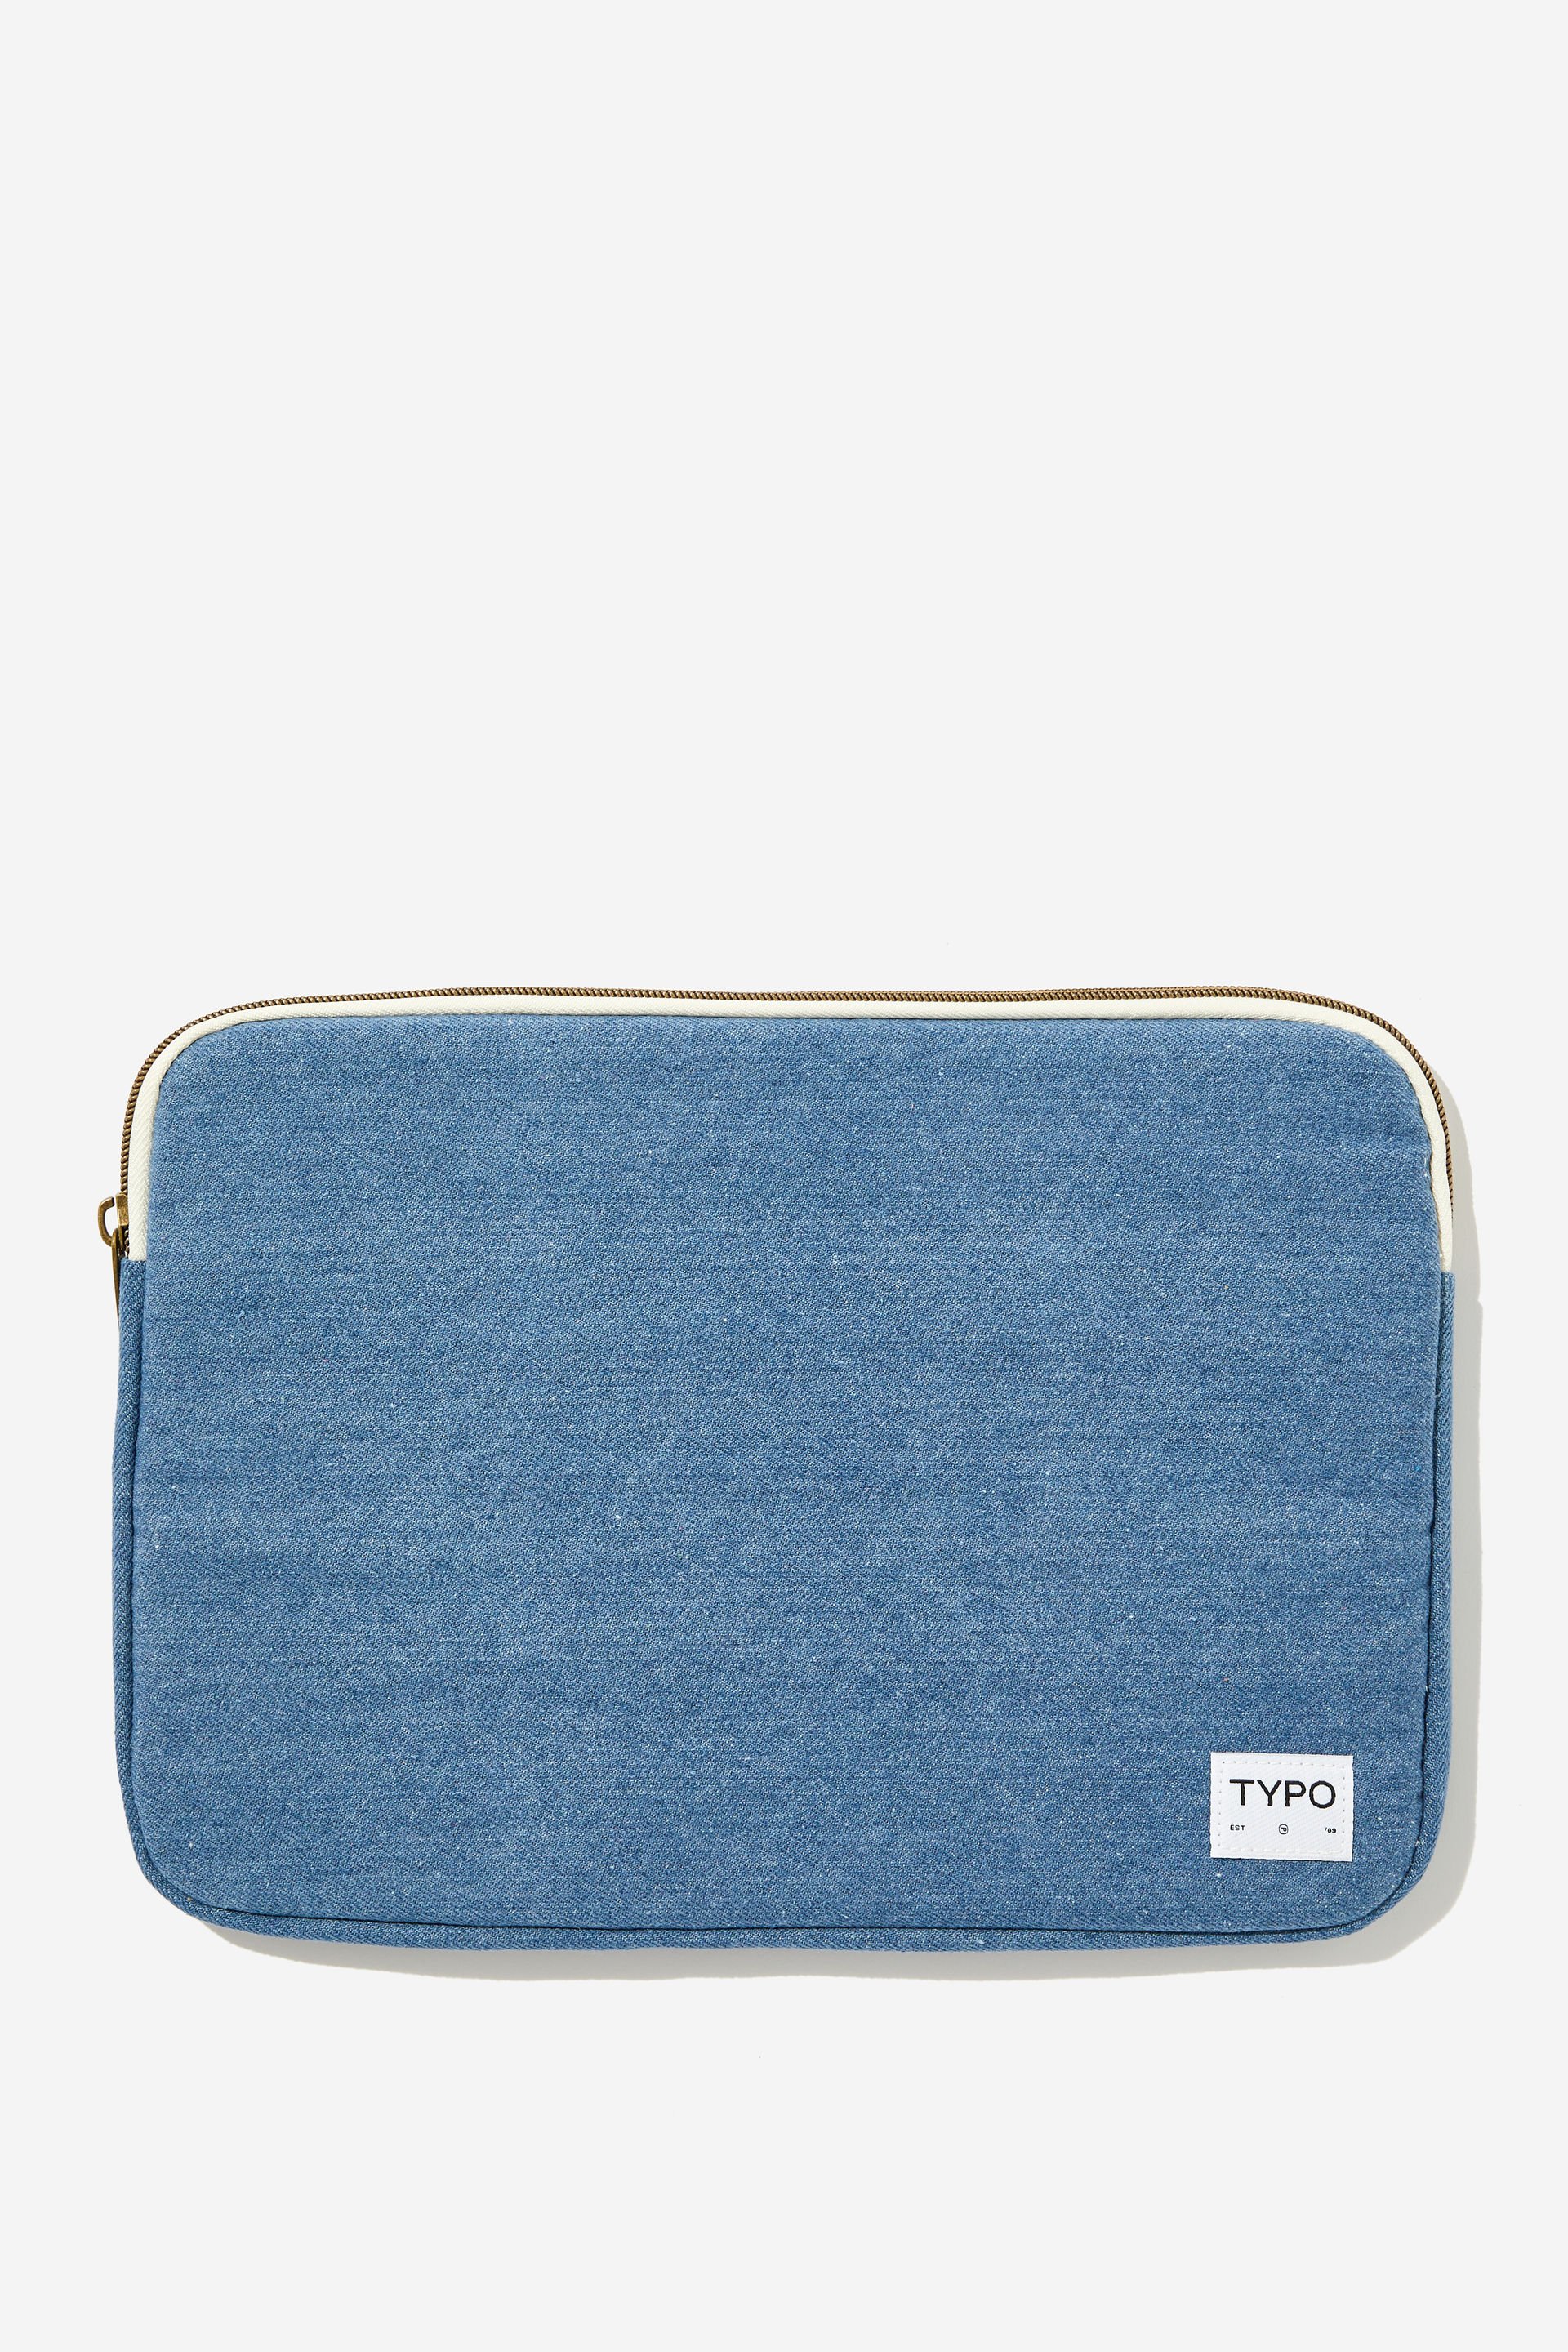 Typo - Take Me Away 13 Inch Laptop Case - Blue denim